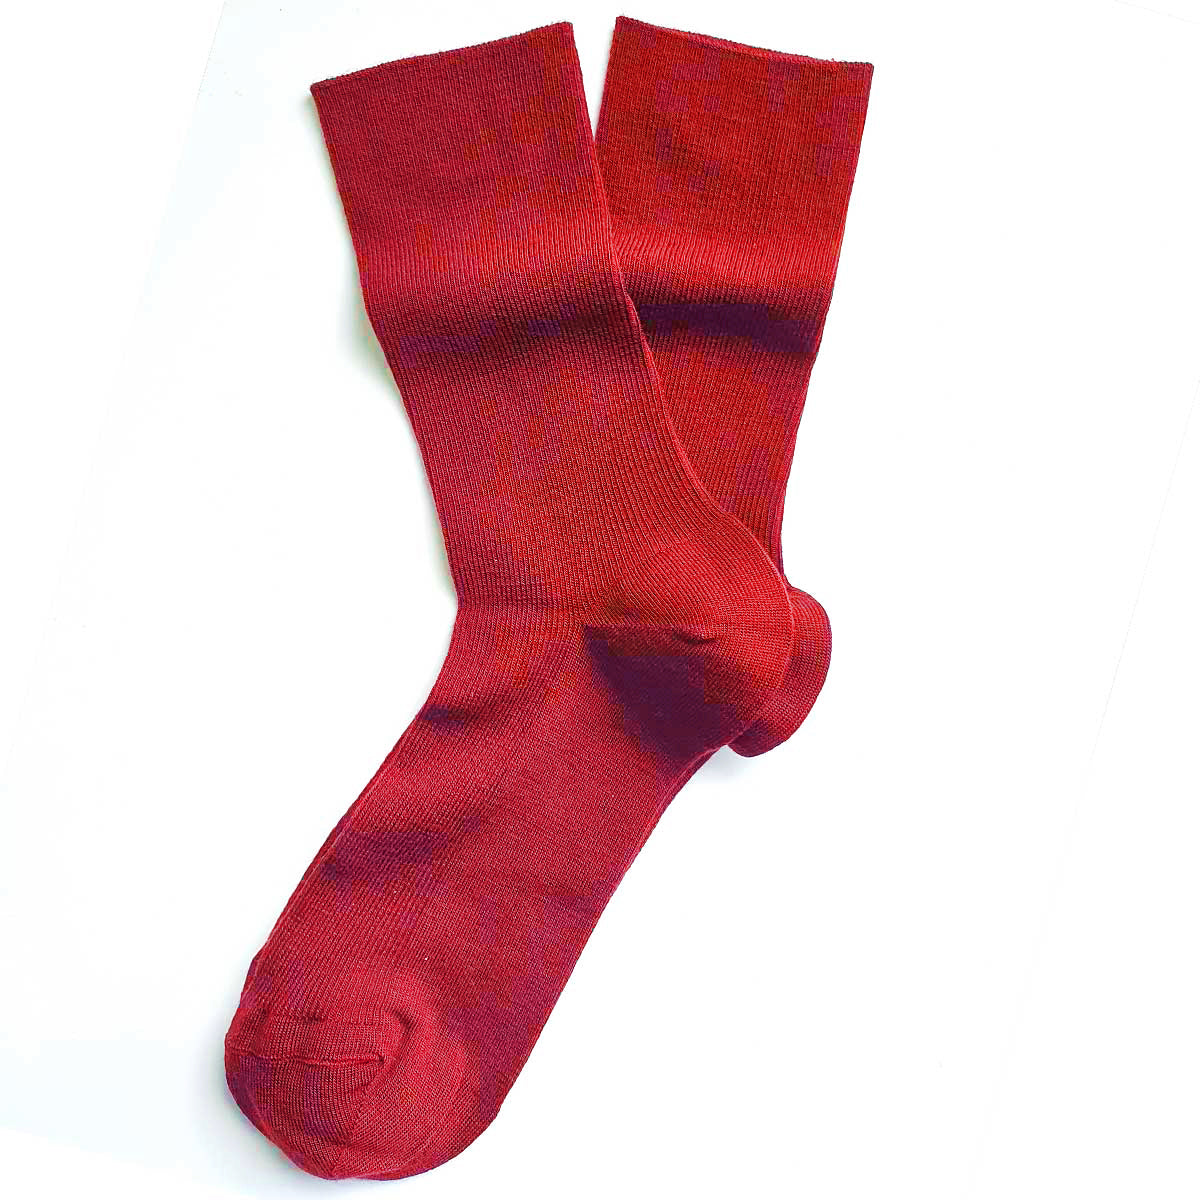 Thin wool socks for women - socks that do not tighten